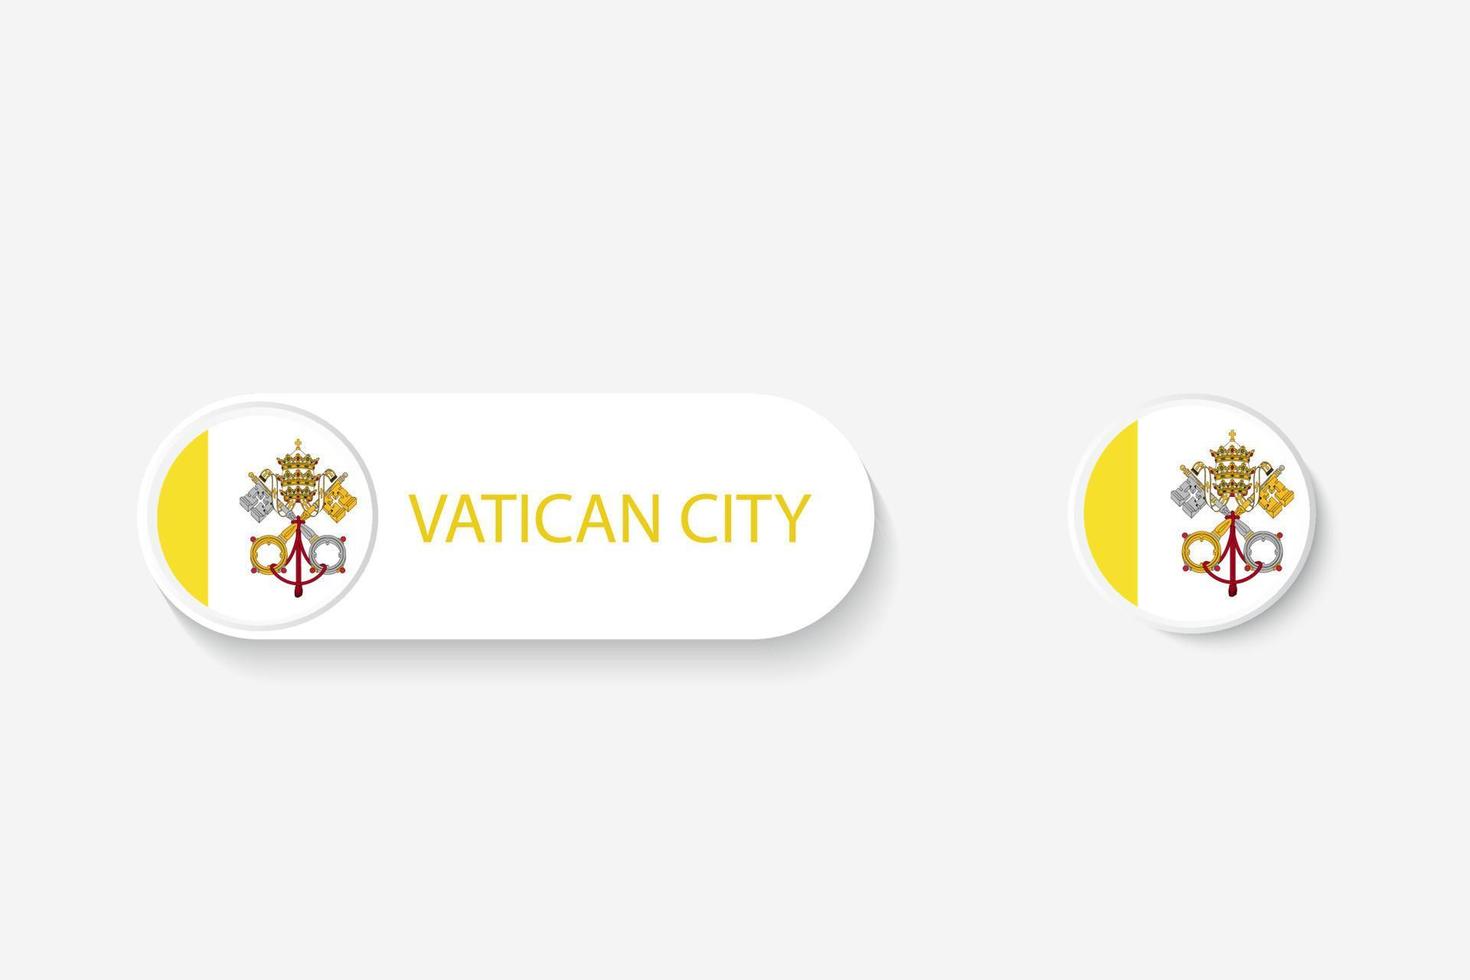 vaticaanstad knop vlag in illustratie van ovaal gevormd met woord van vaticaanstad. en knop vlag vaticaanstad. vector